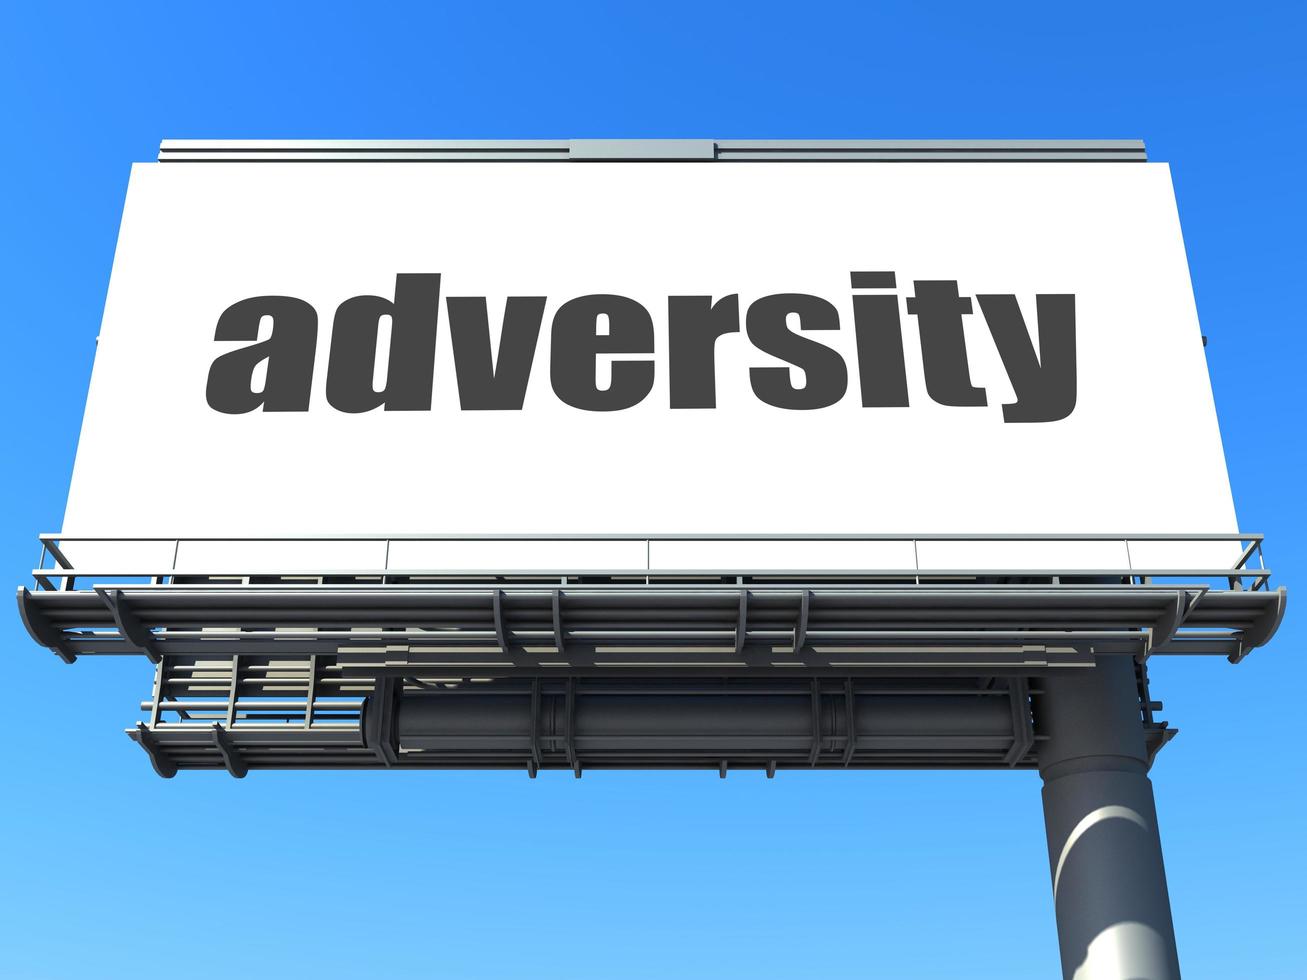 mot d'adversité sur le panneau d'affichage photo